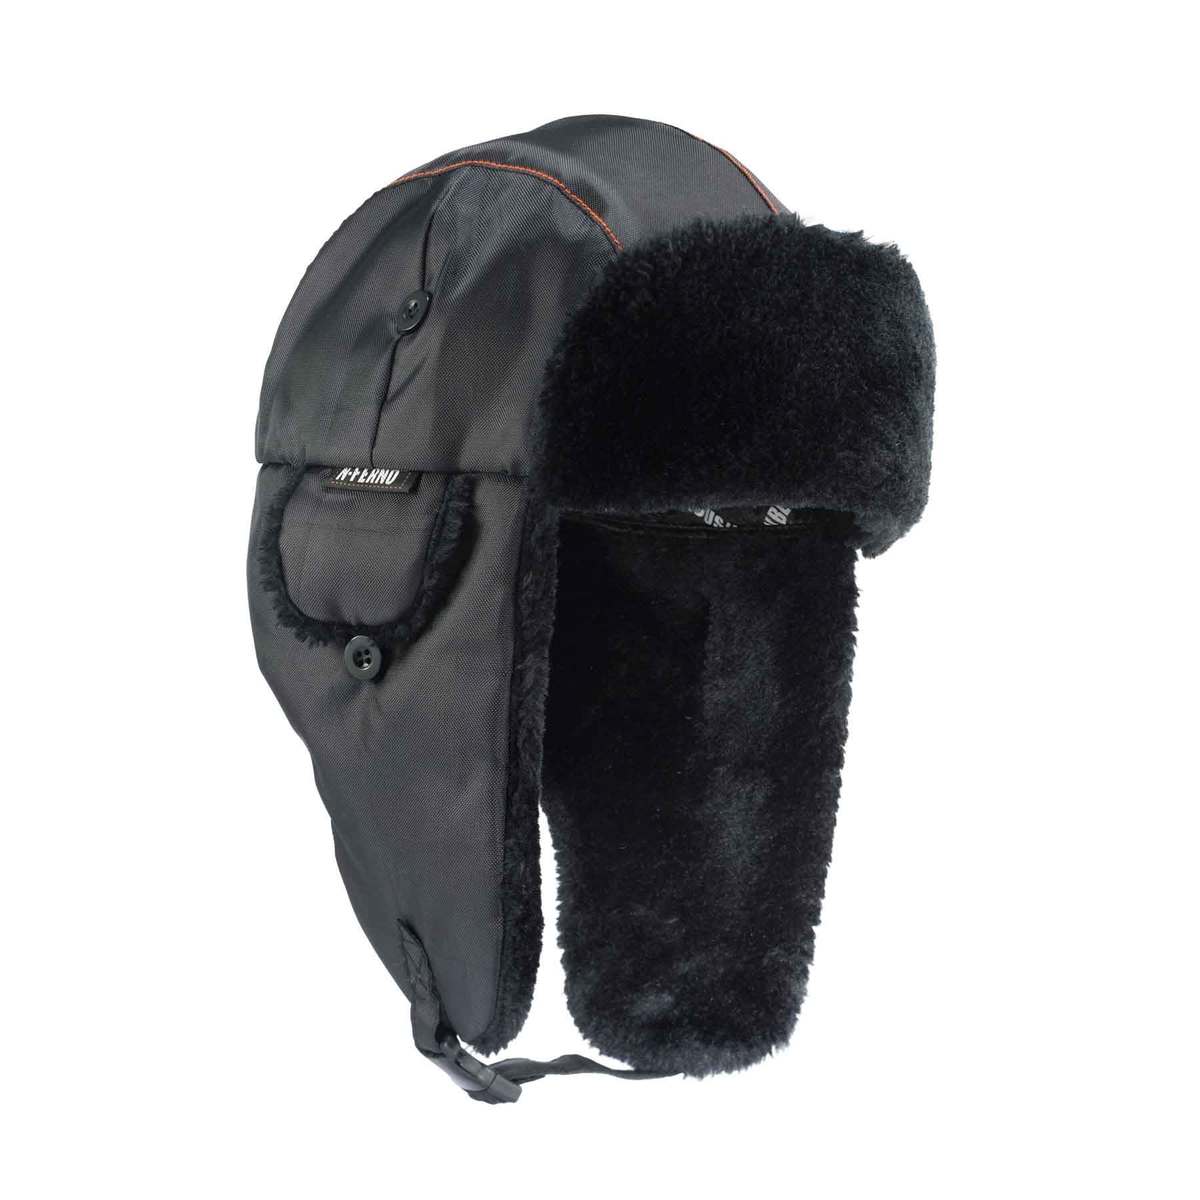 Ergodyne® Black N-Ferno® 69843 Nylon Trapper Hat With Buckle Closure